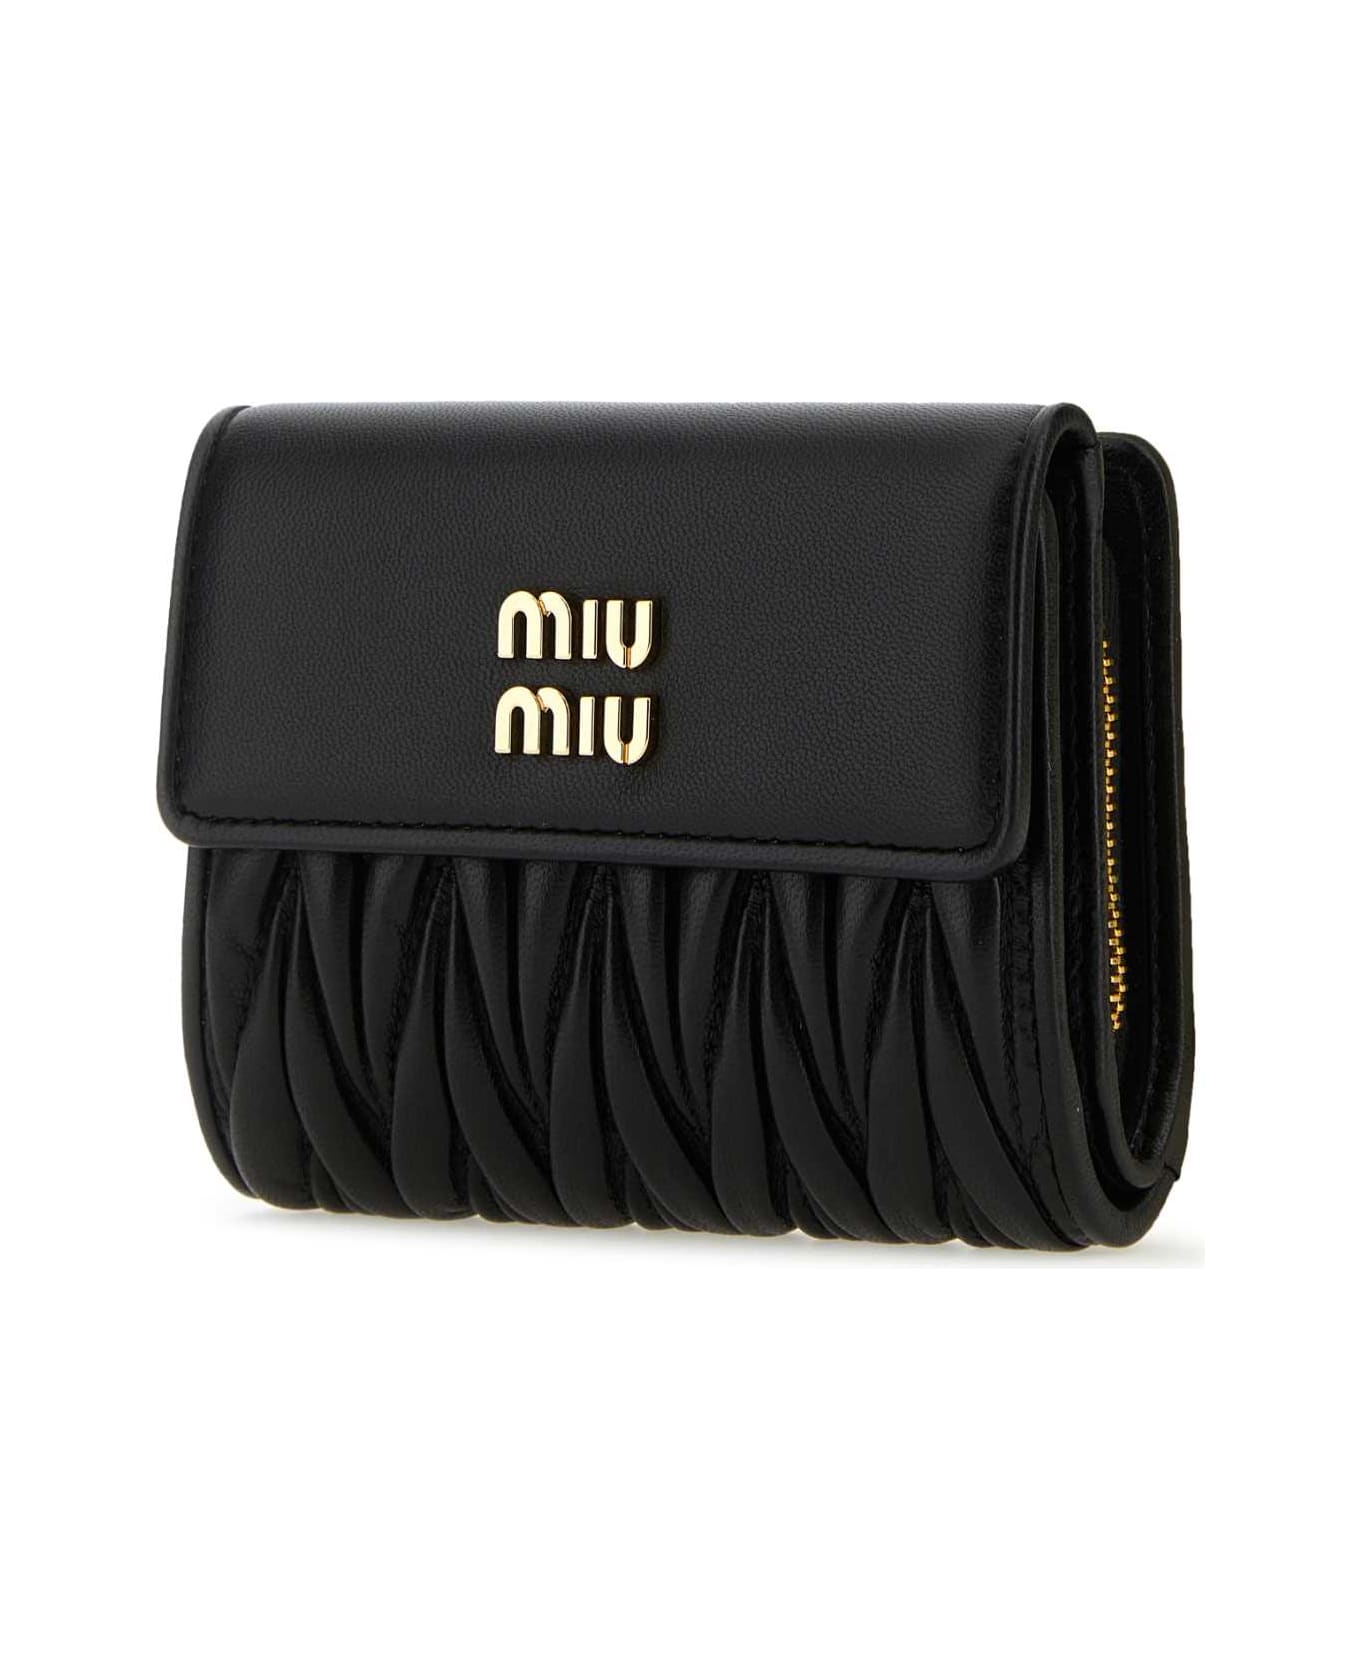 Miu Miu Black Leather Wallet - NERO